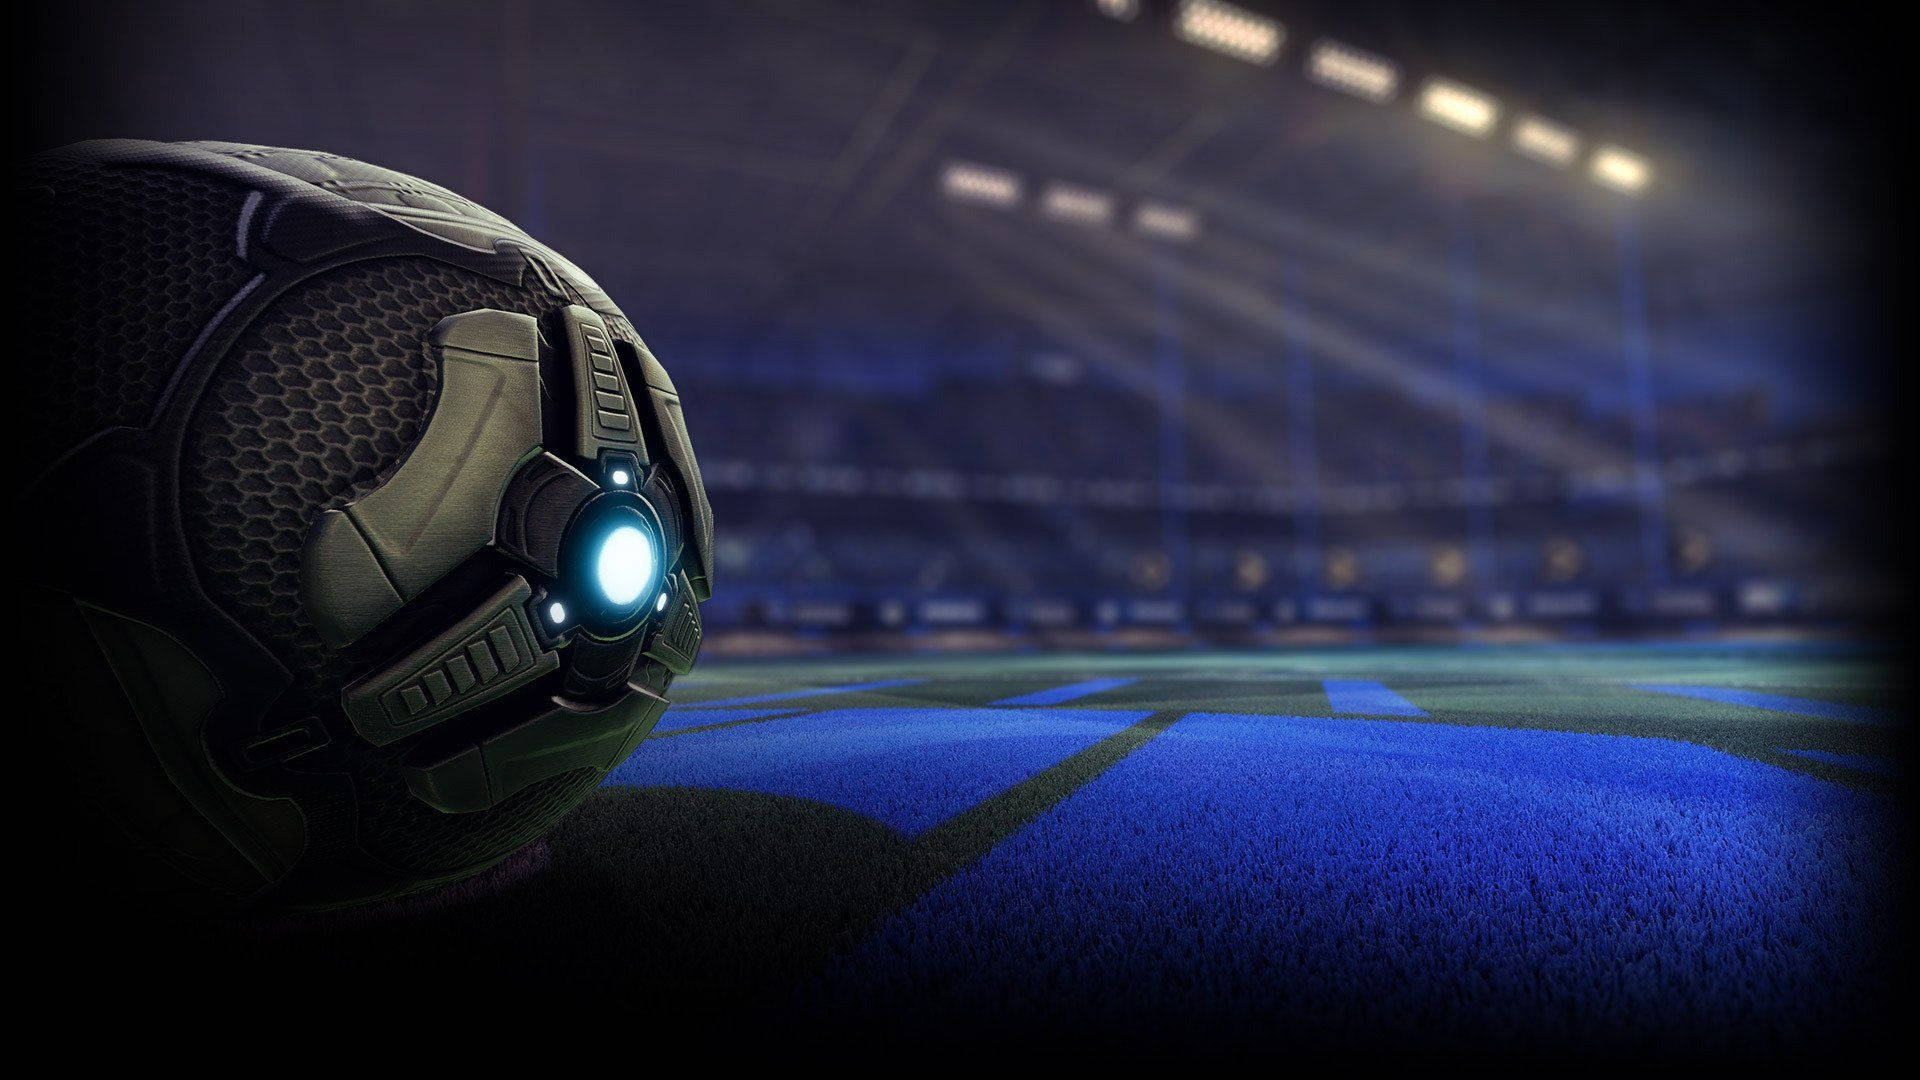 Hd Rocket League Vehicular Soccer Ball Background